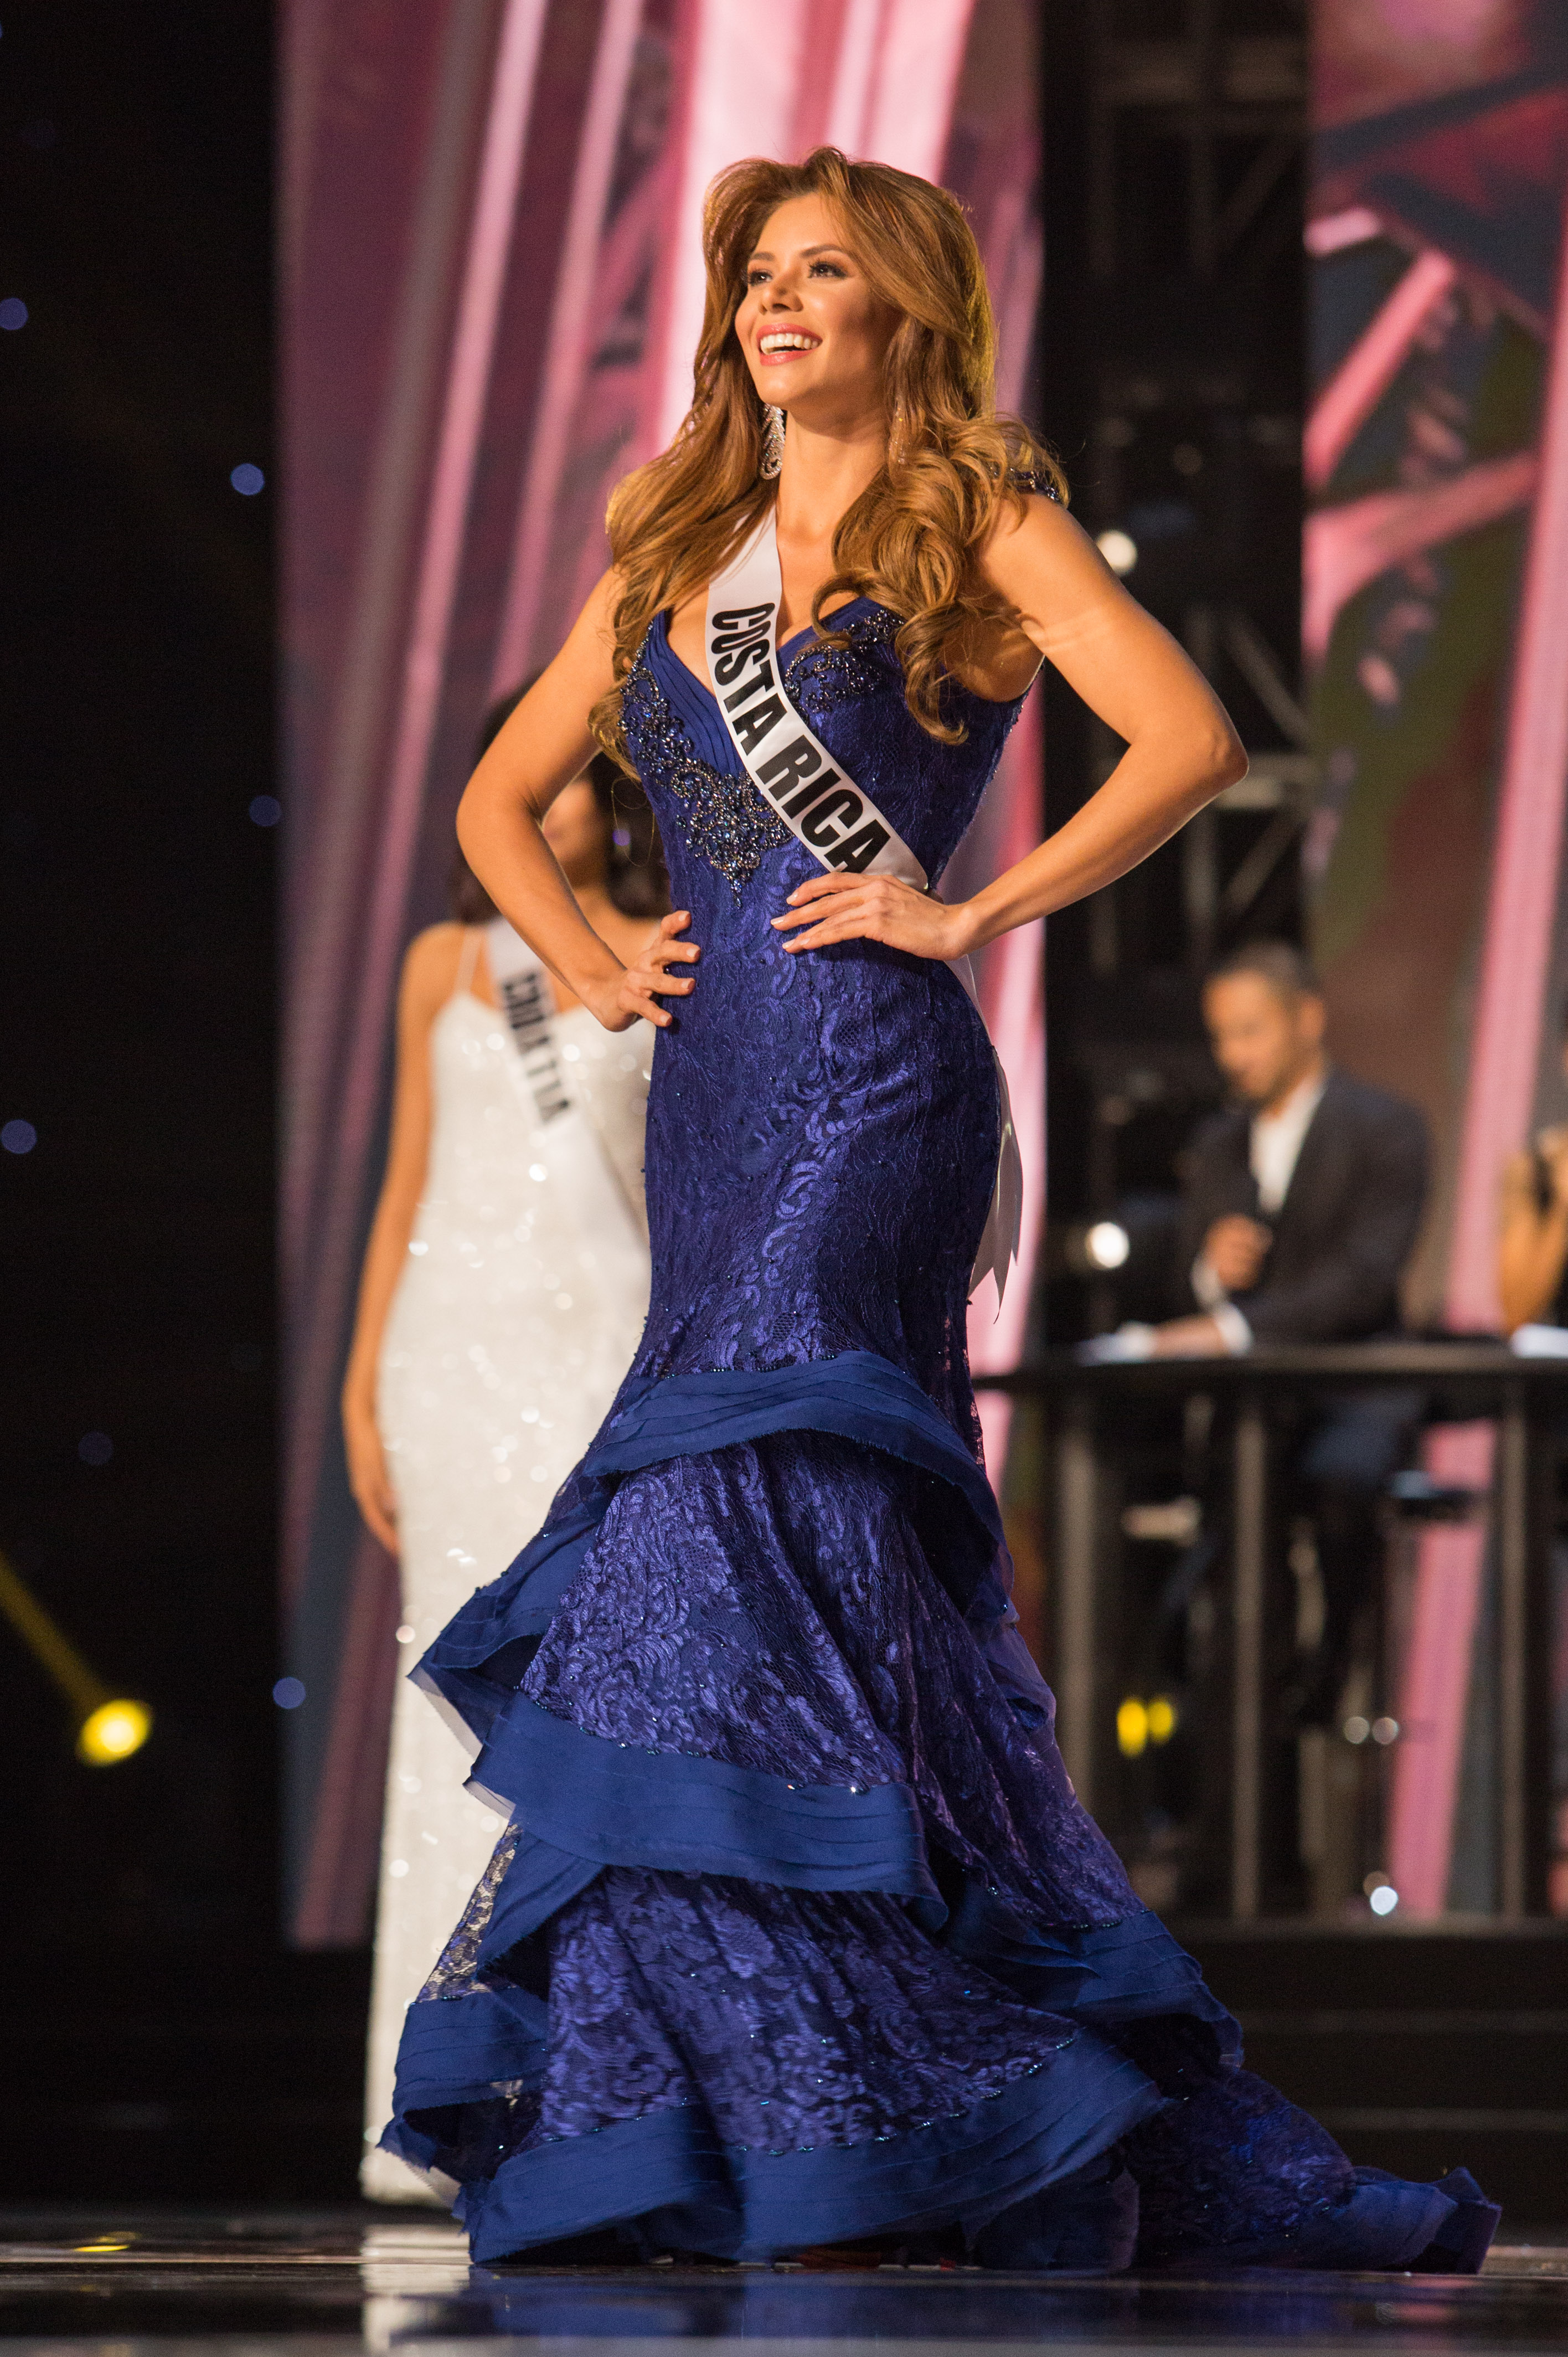 Carolina Duran, Miss Costa Rica 2016 